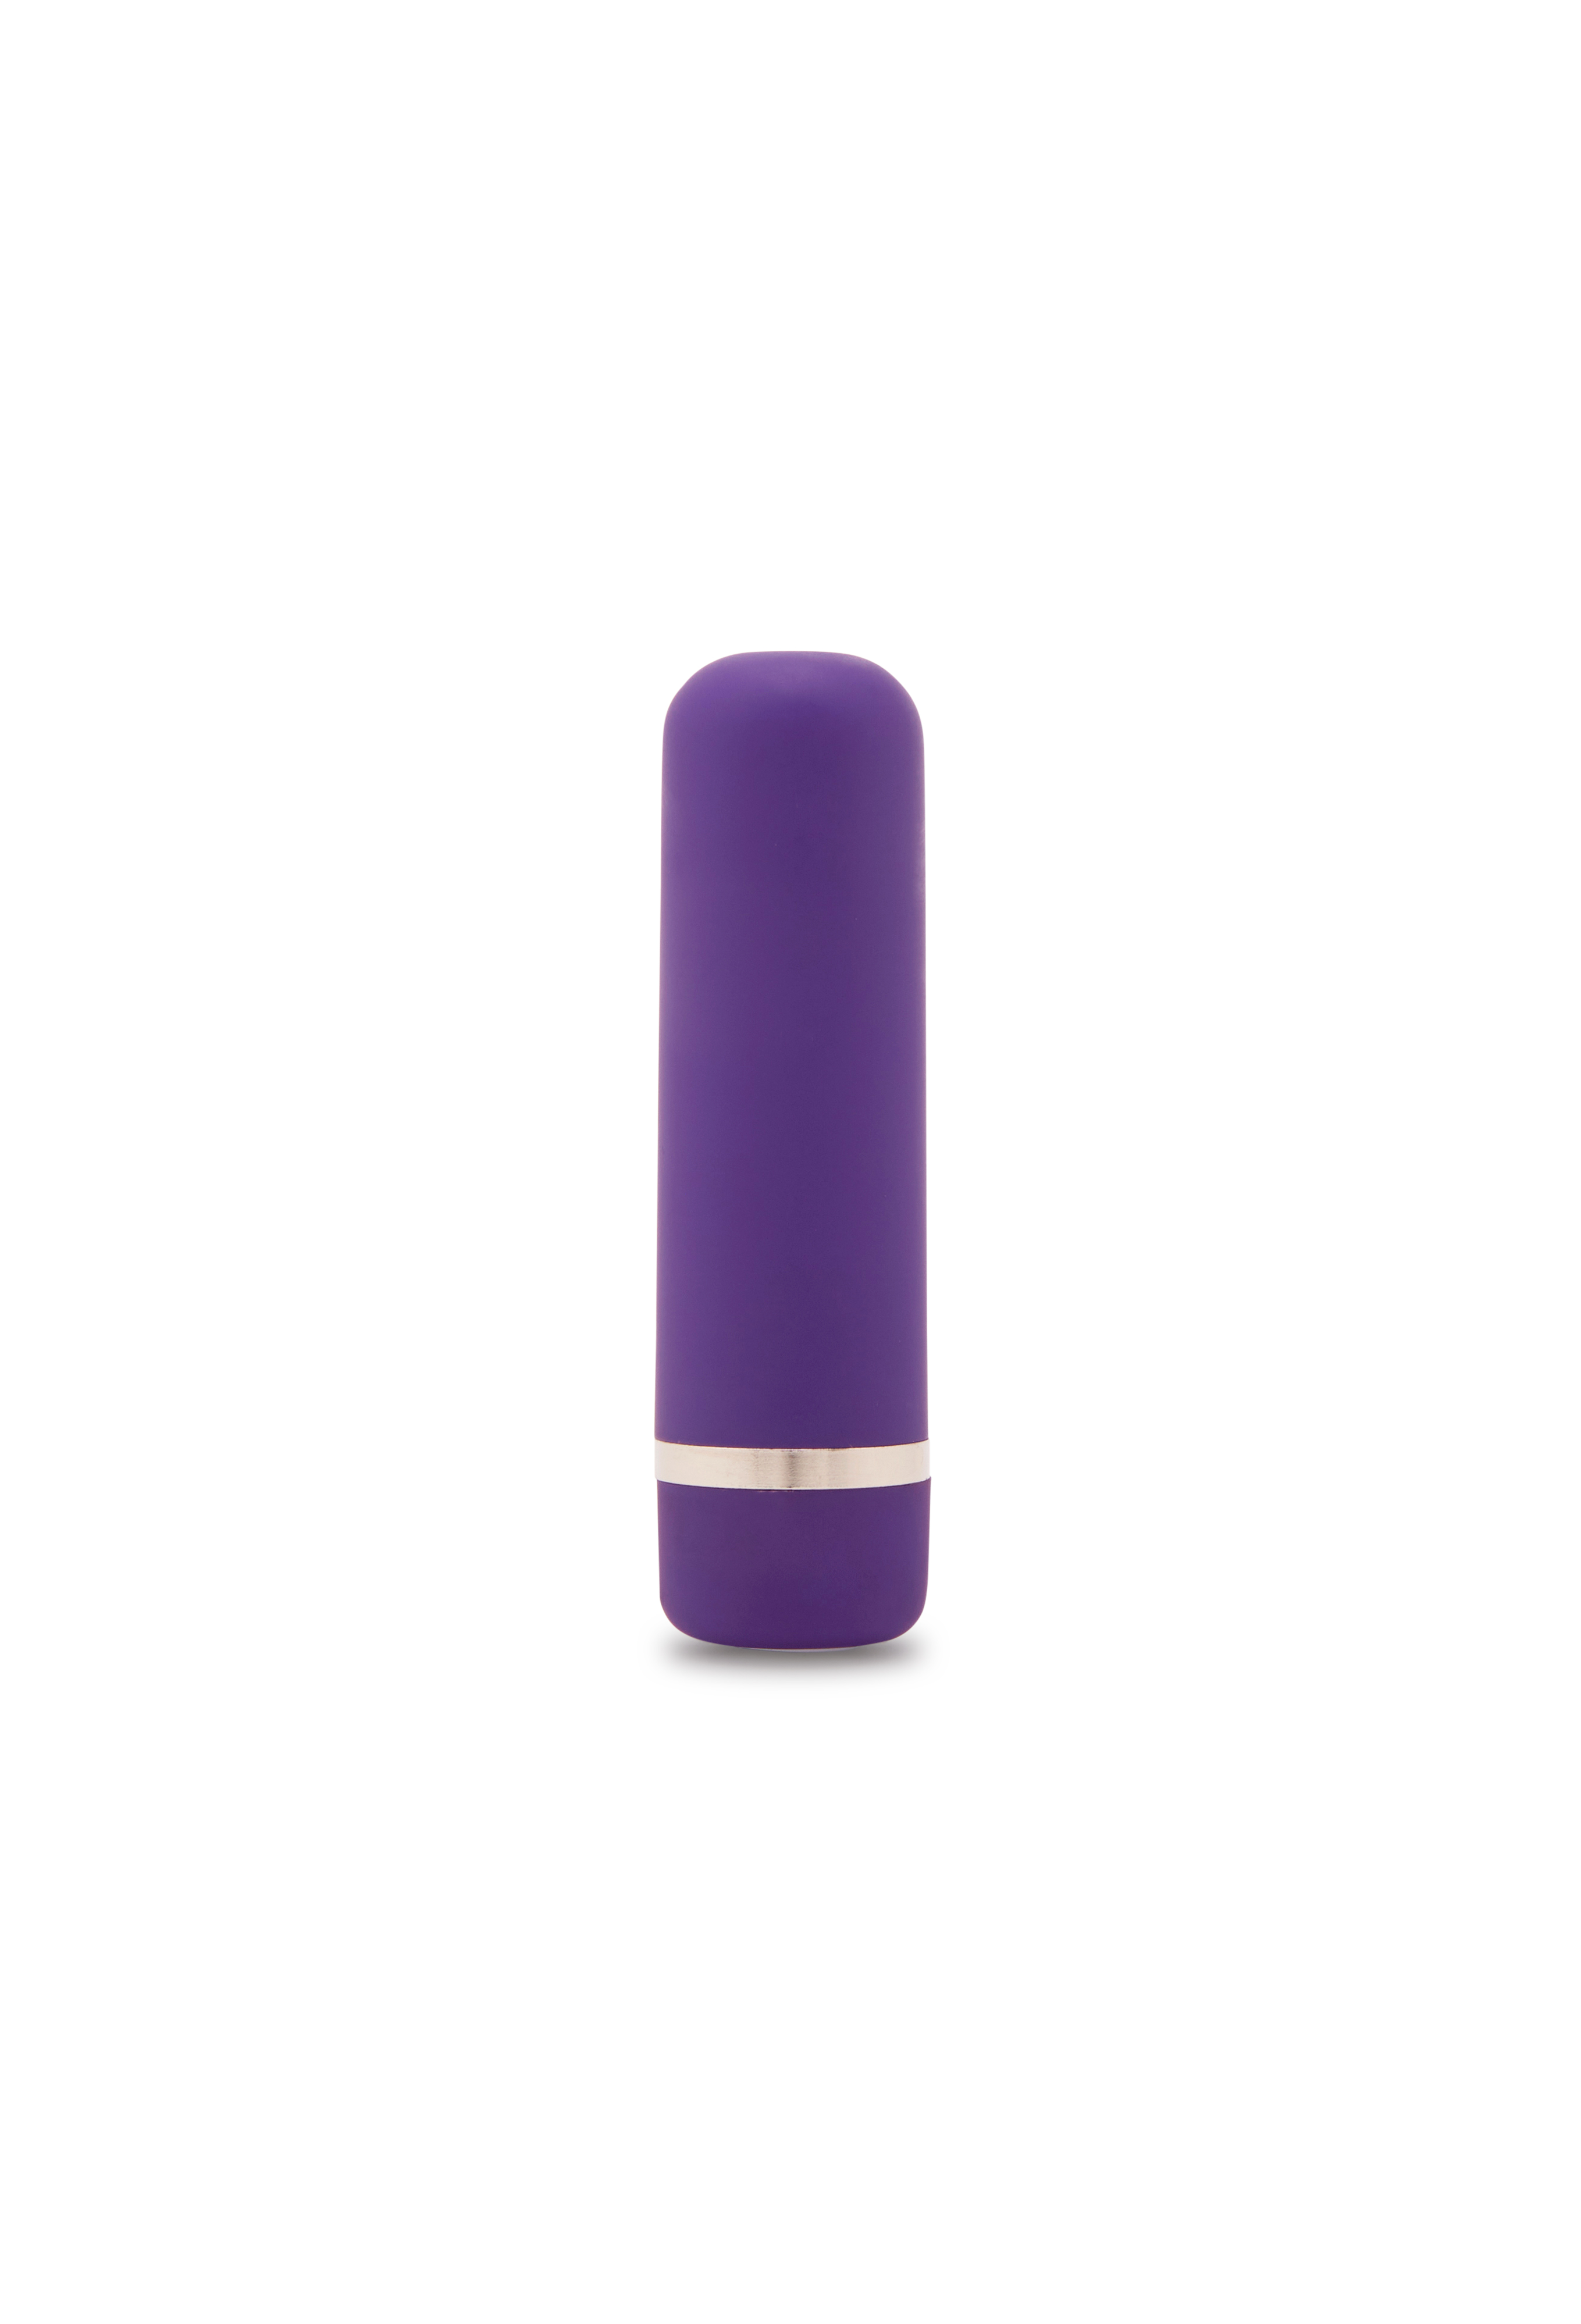 Nu Sensuelle Joie Rechargeable Purple Bullet Vibrator